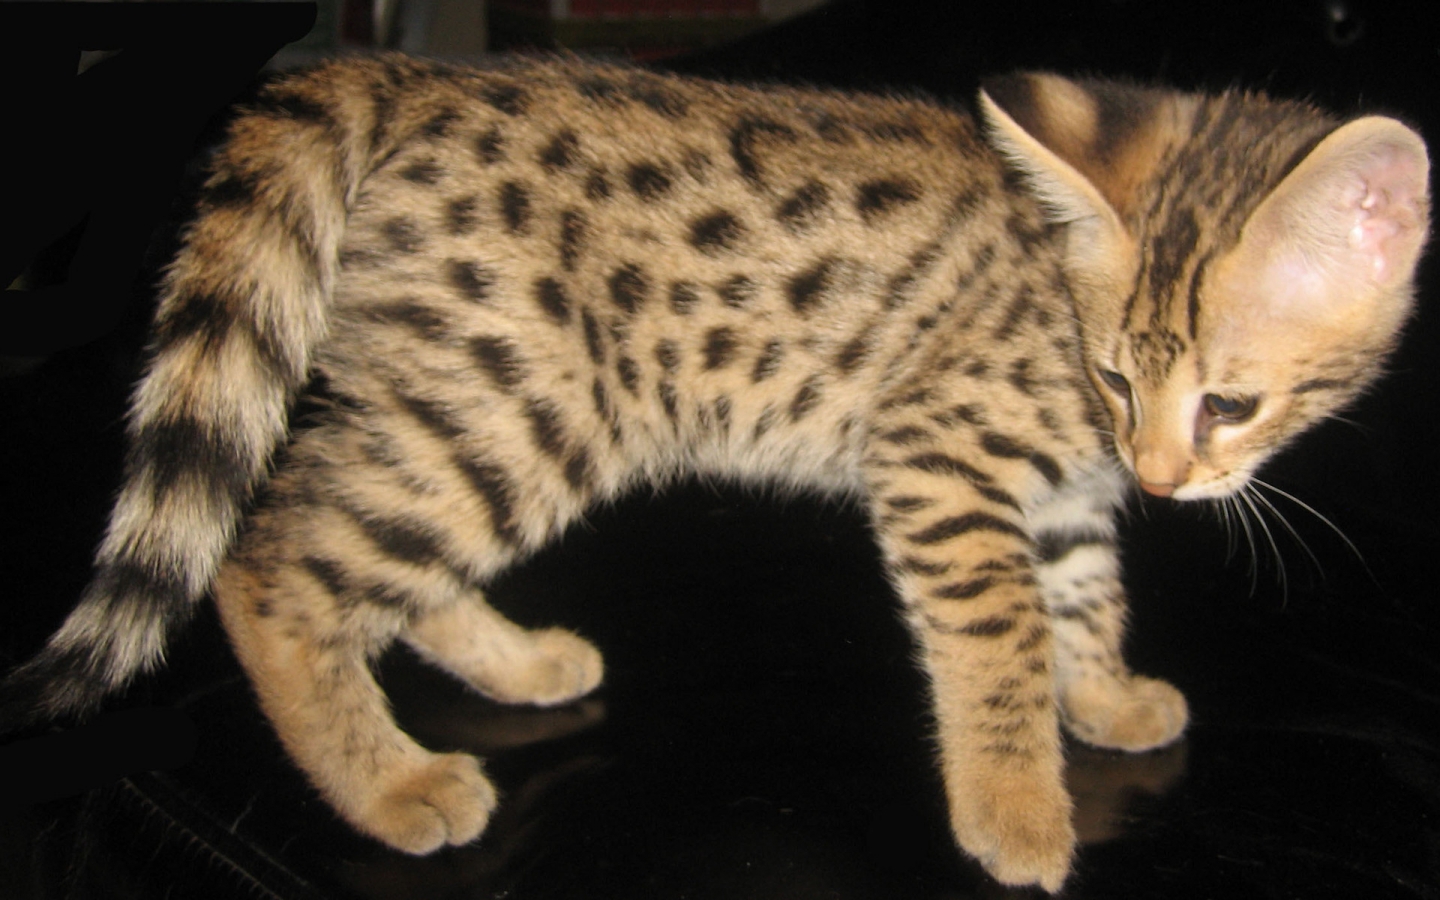 Savannah Kitten for 1440 x 900 widescreen resolution